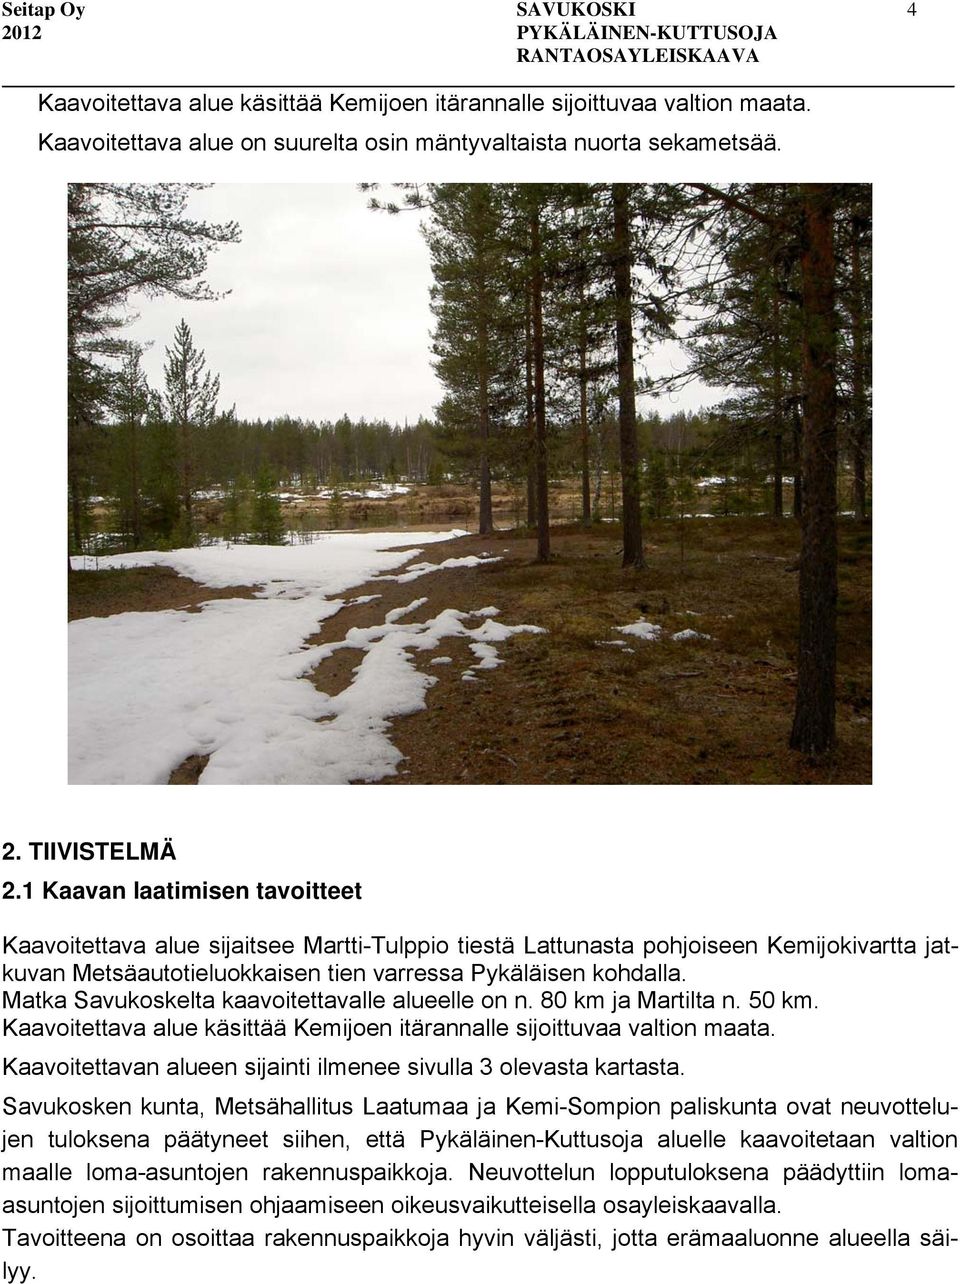 Matka Savukoskelta kaavoitettavalle alueelle on n. 80 km ja Martilta n. 50 km. Kaavoitettava alue käsittää Kemijoen itärannalle sijoittuvaa valtion maata.